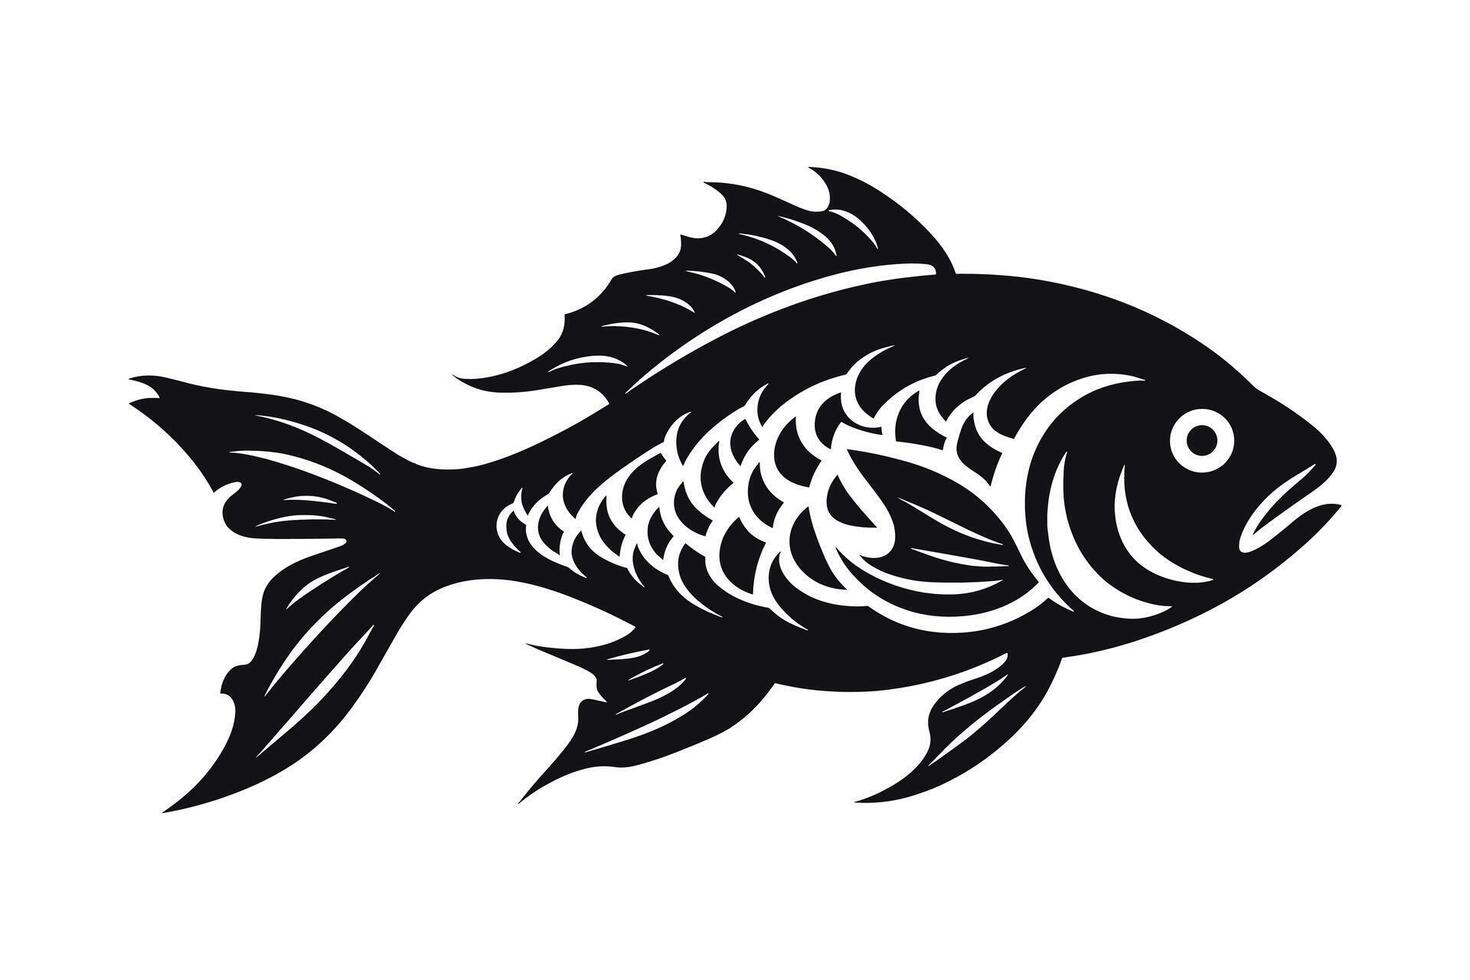 ilustração do uma peixe vetor